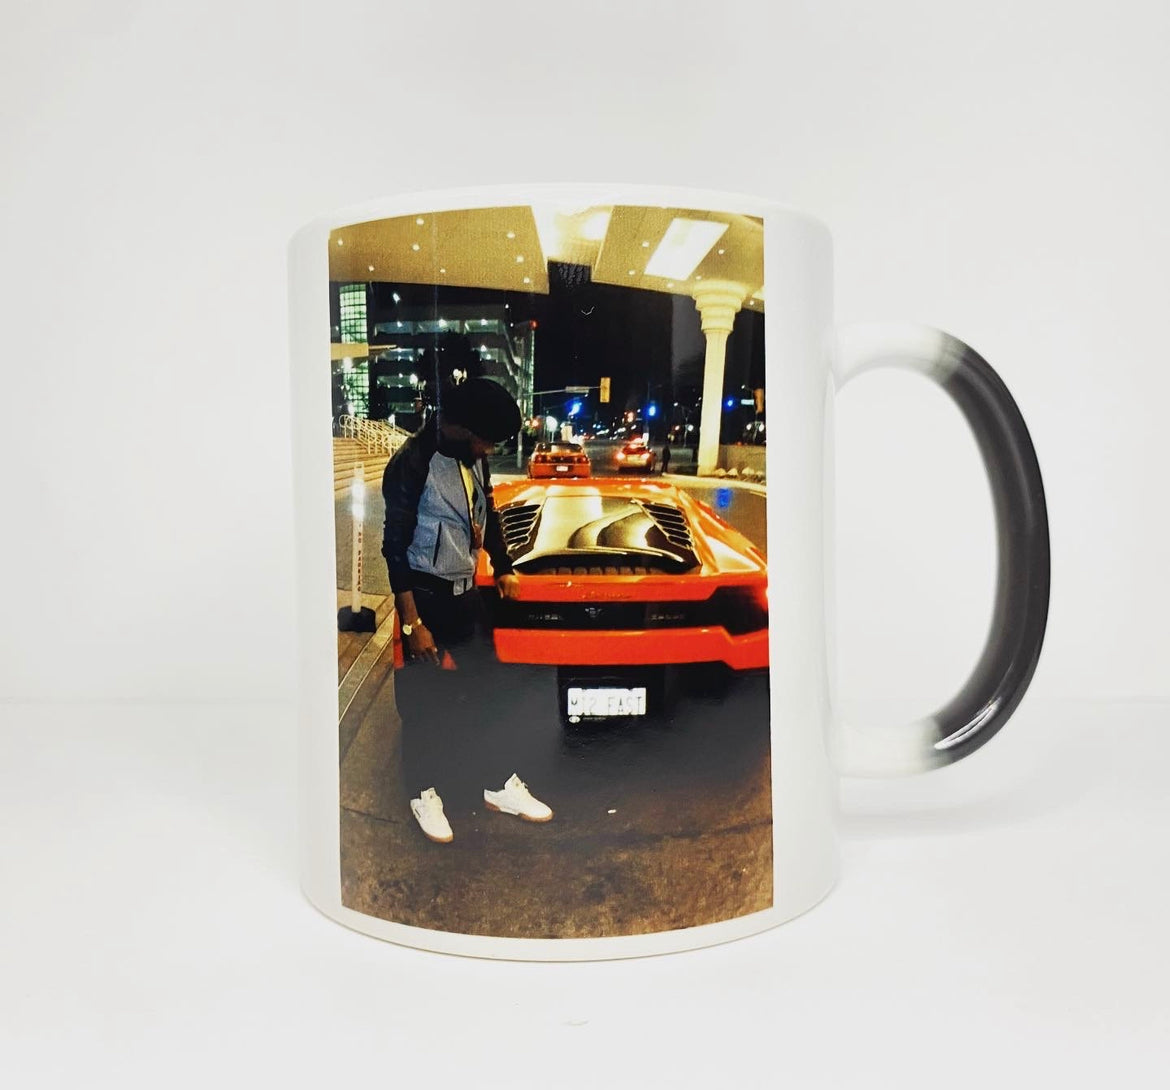 Colour Changing Mug - Photo Printed Mug - Kustom Keepsakez